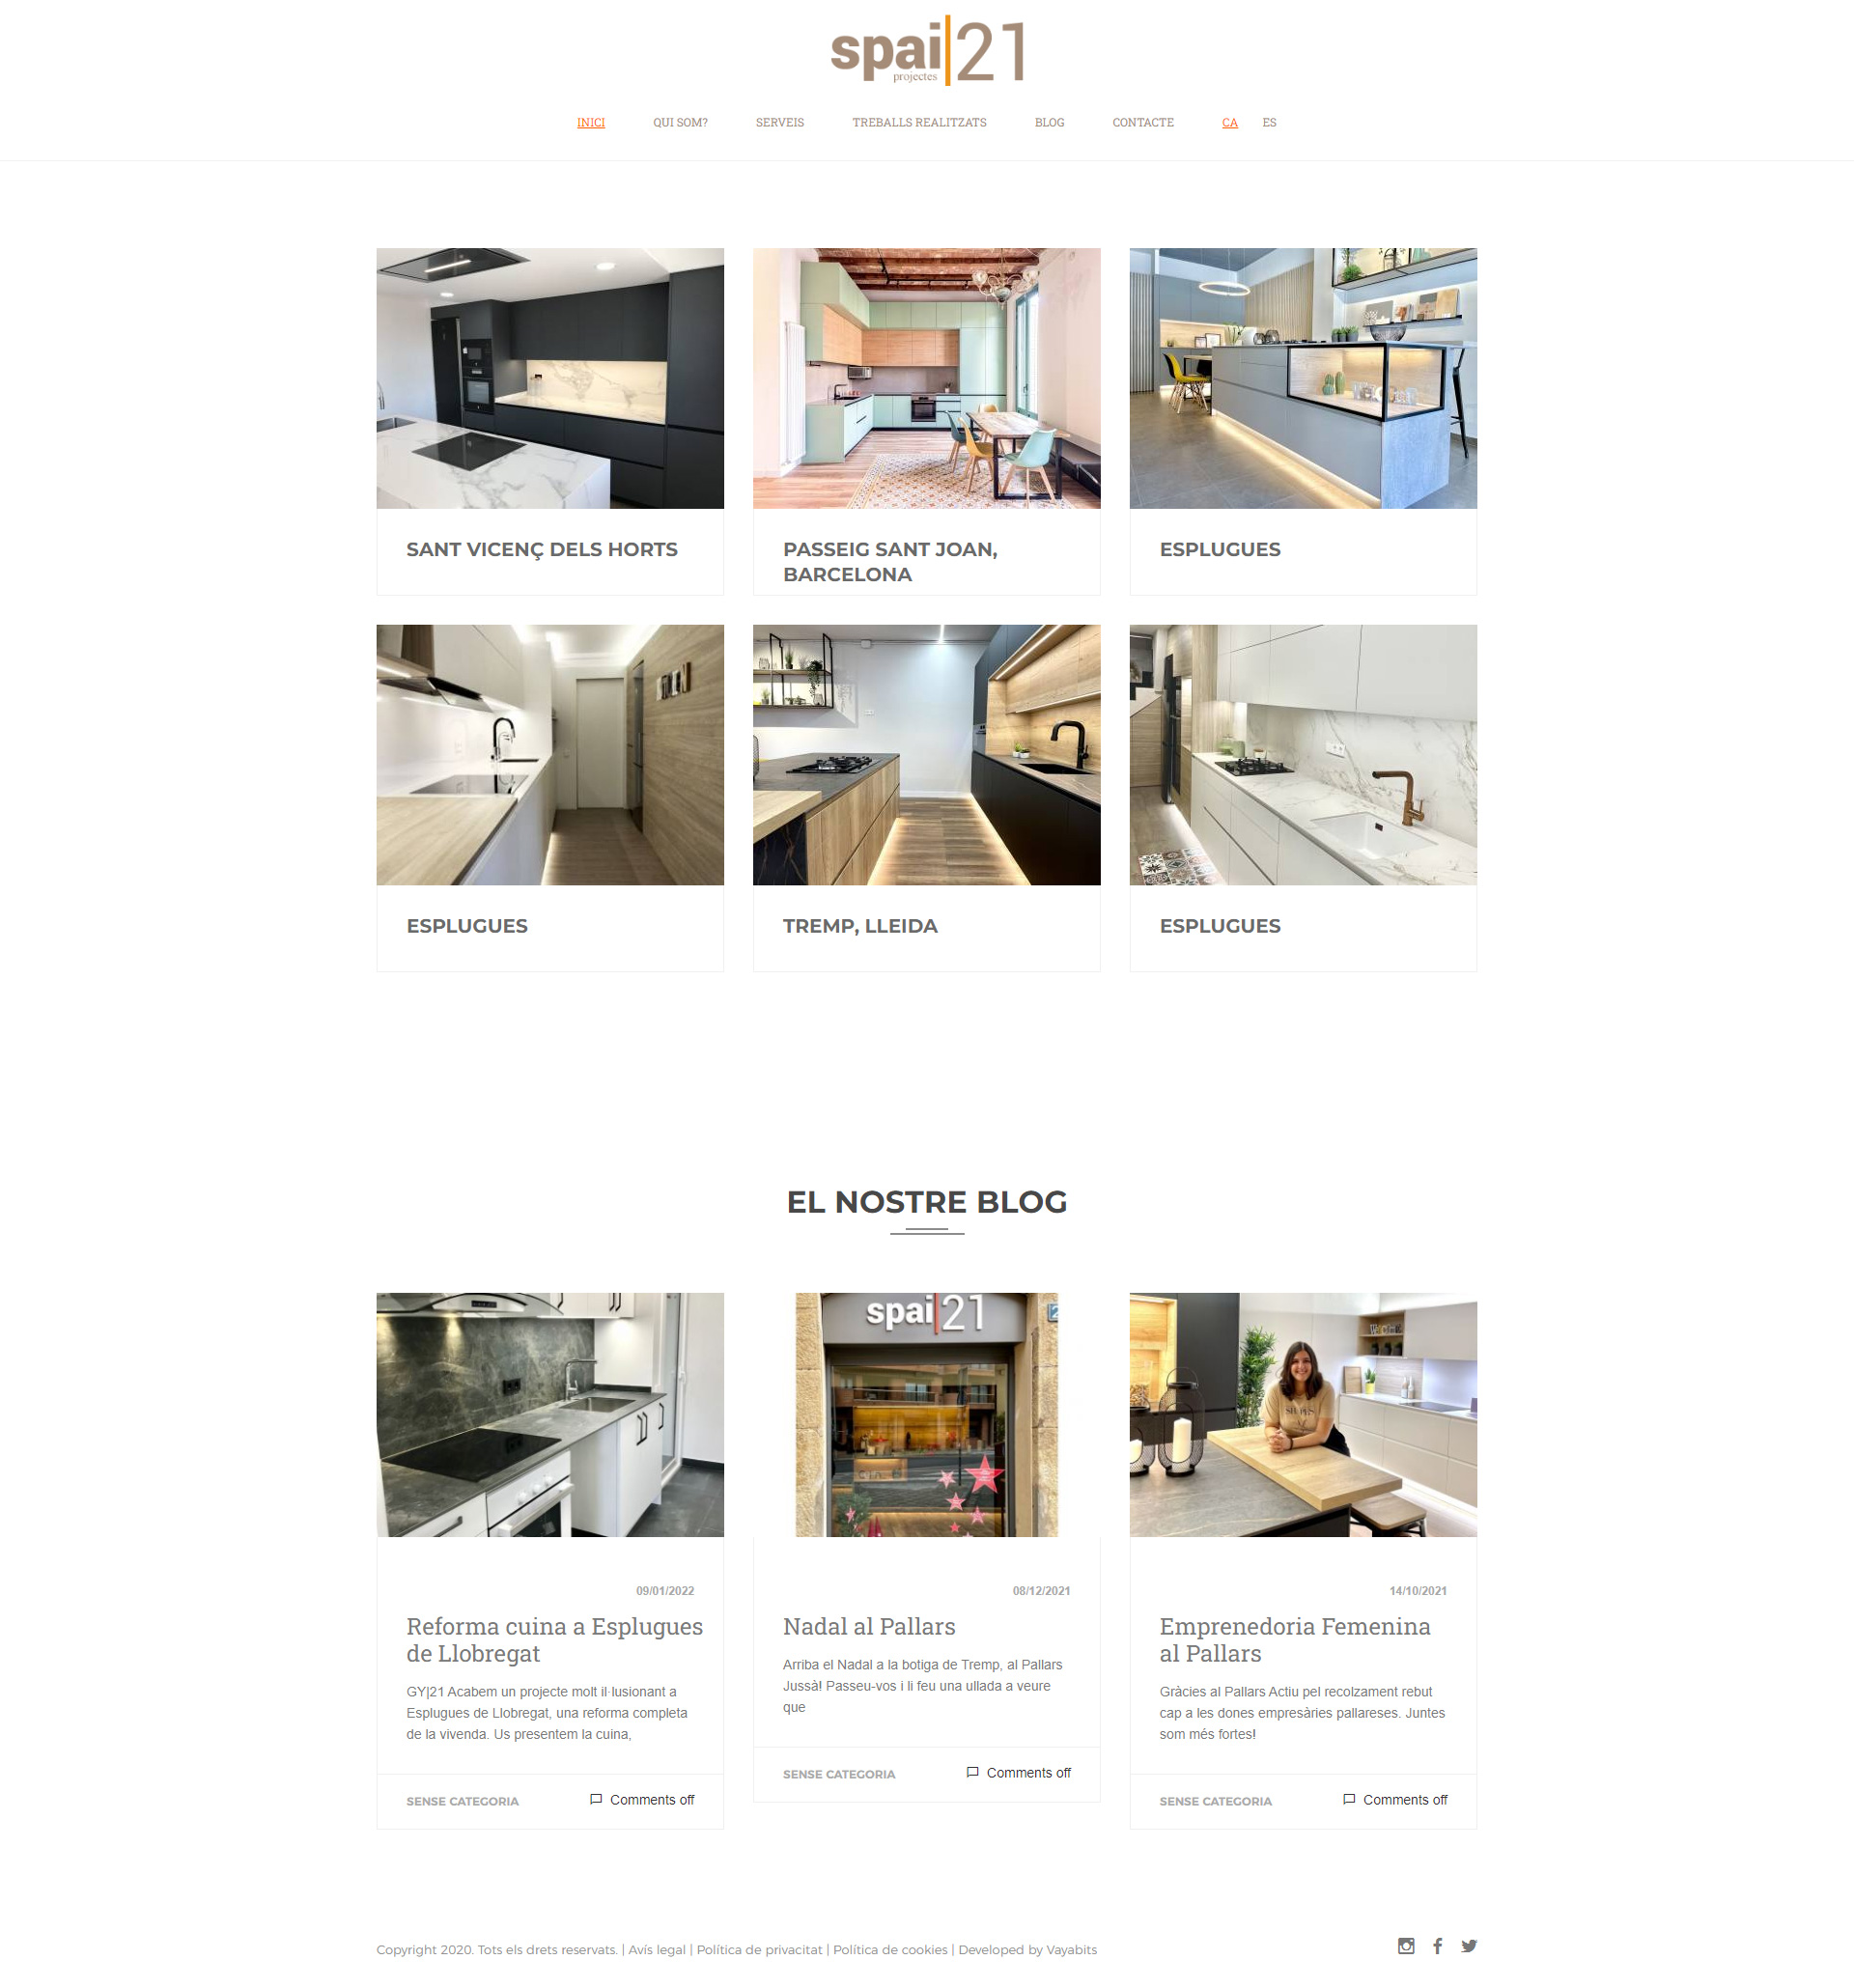 diseño portfolio web espai 21  proyecto de interiores barcelona